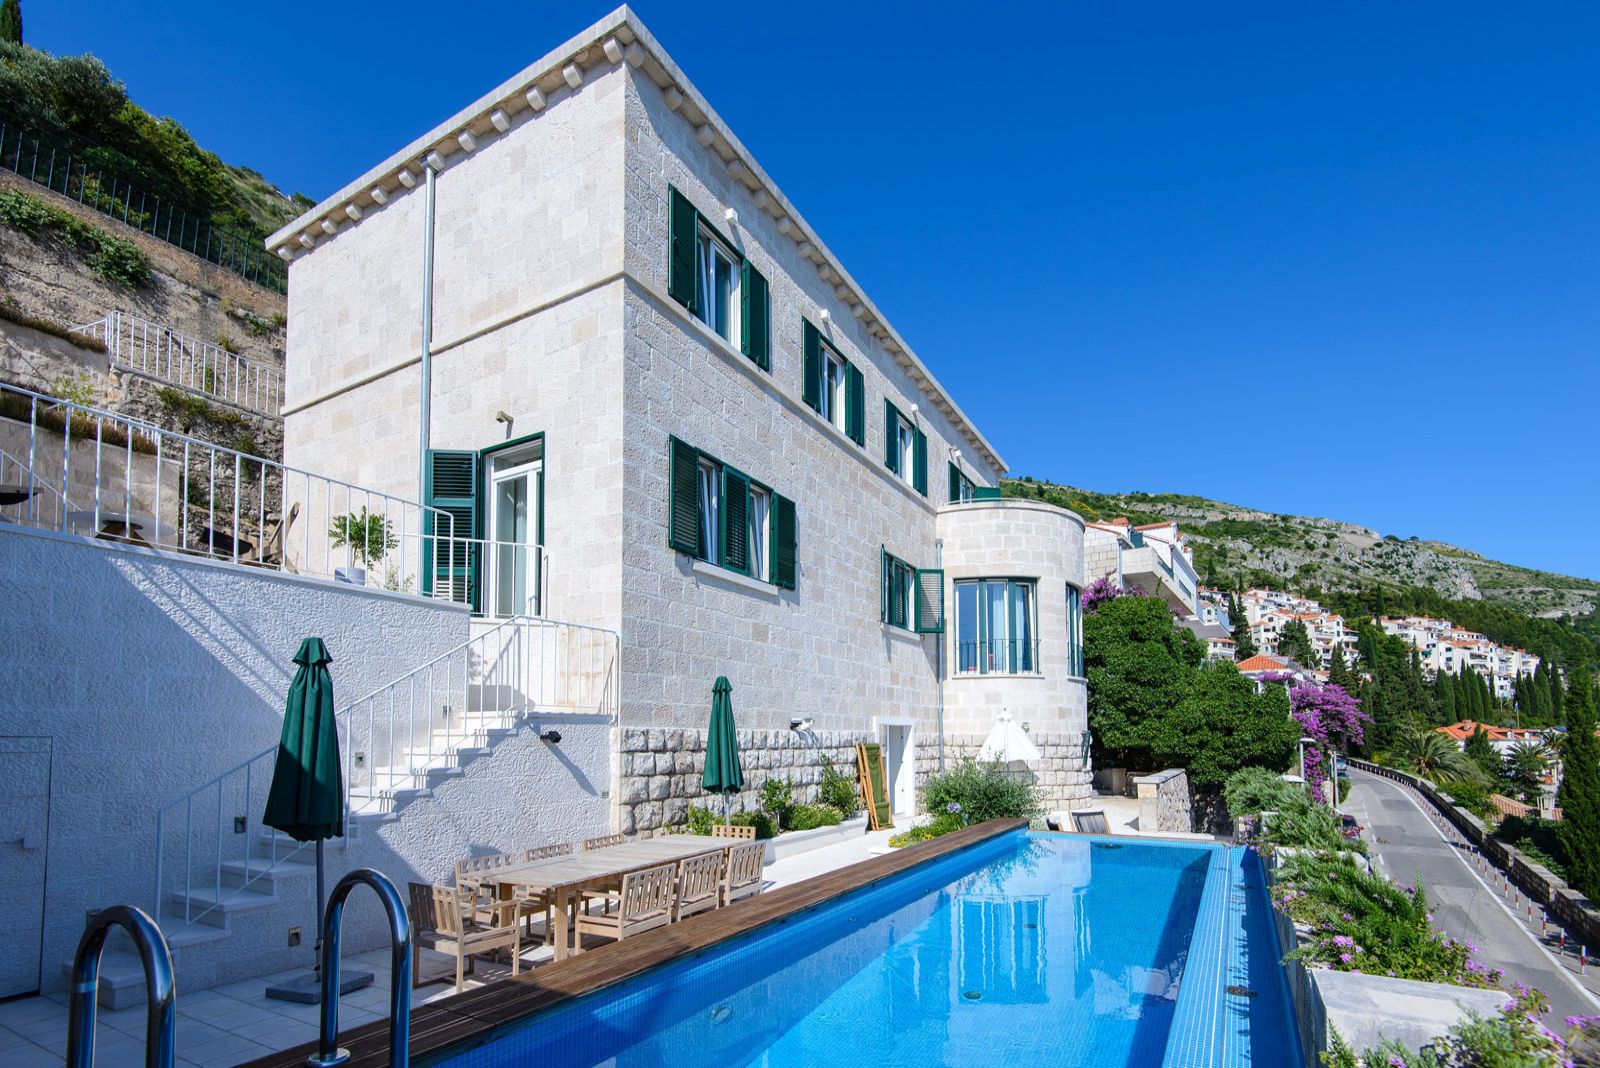 Dnevna slika hrvatske luksuzne vile Castello za najam u Dubrovniku za  odmor s privatnim bazenom, jacuzzijem i saunom uz plažu Banja.